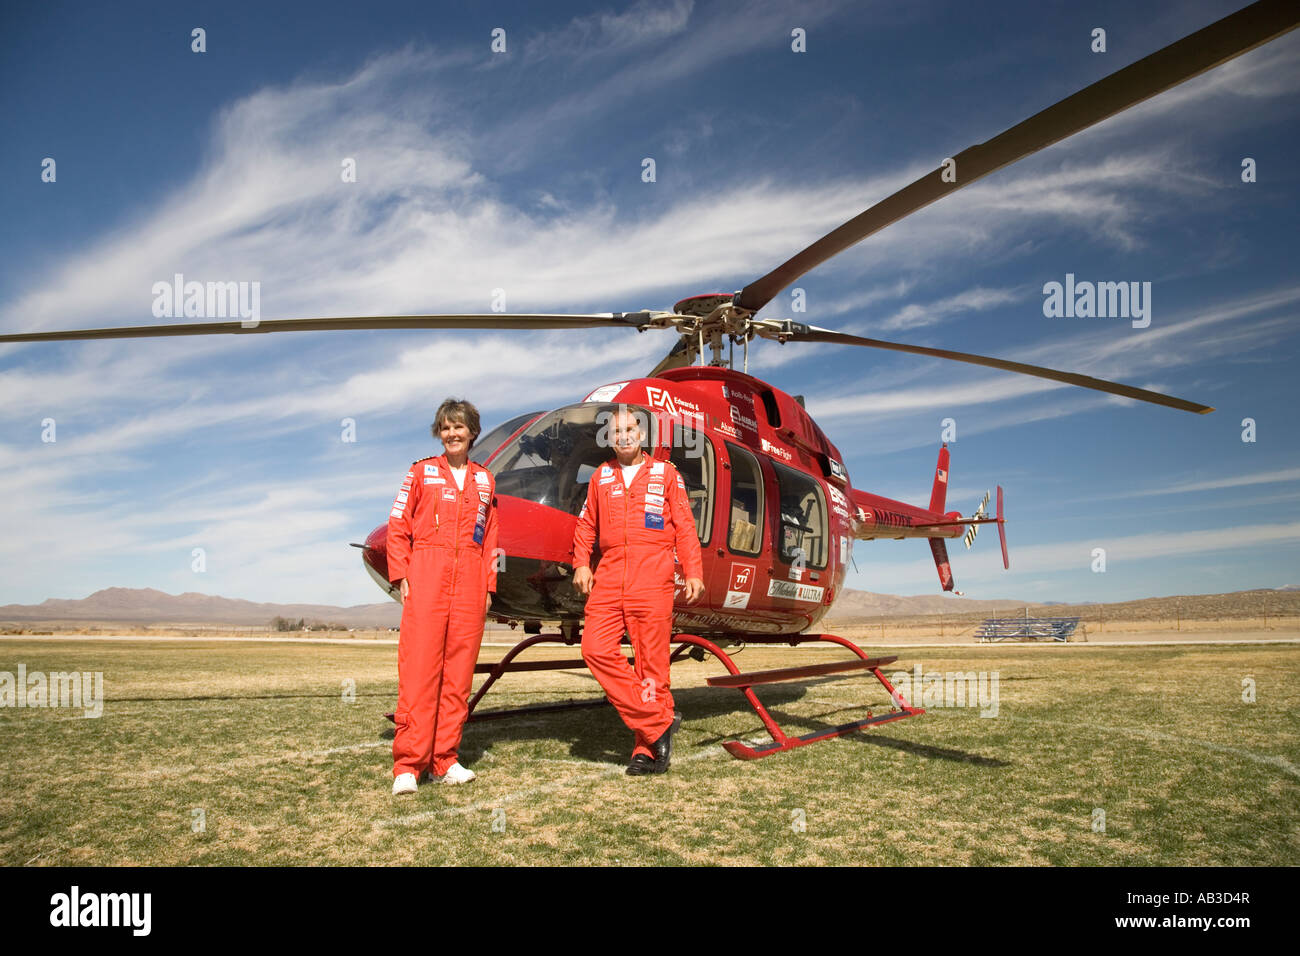 Helicóptero Bell 407, polo a polo, Polar primer vuelo, Nevada Foto de stock